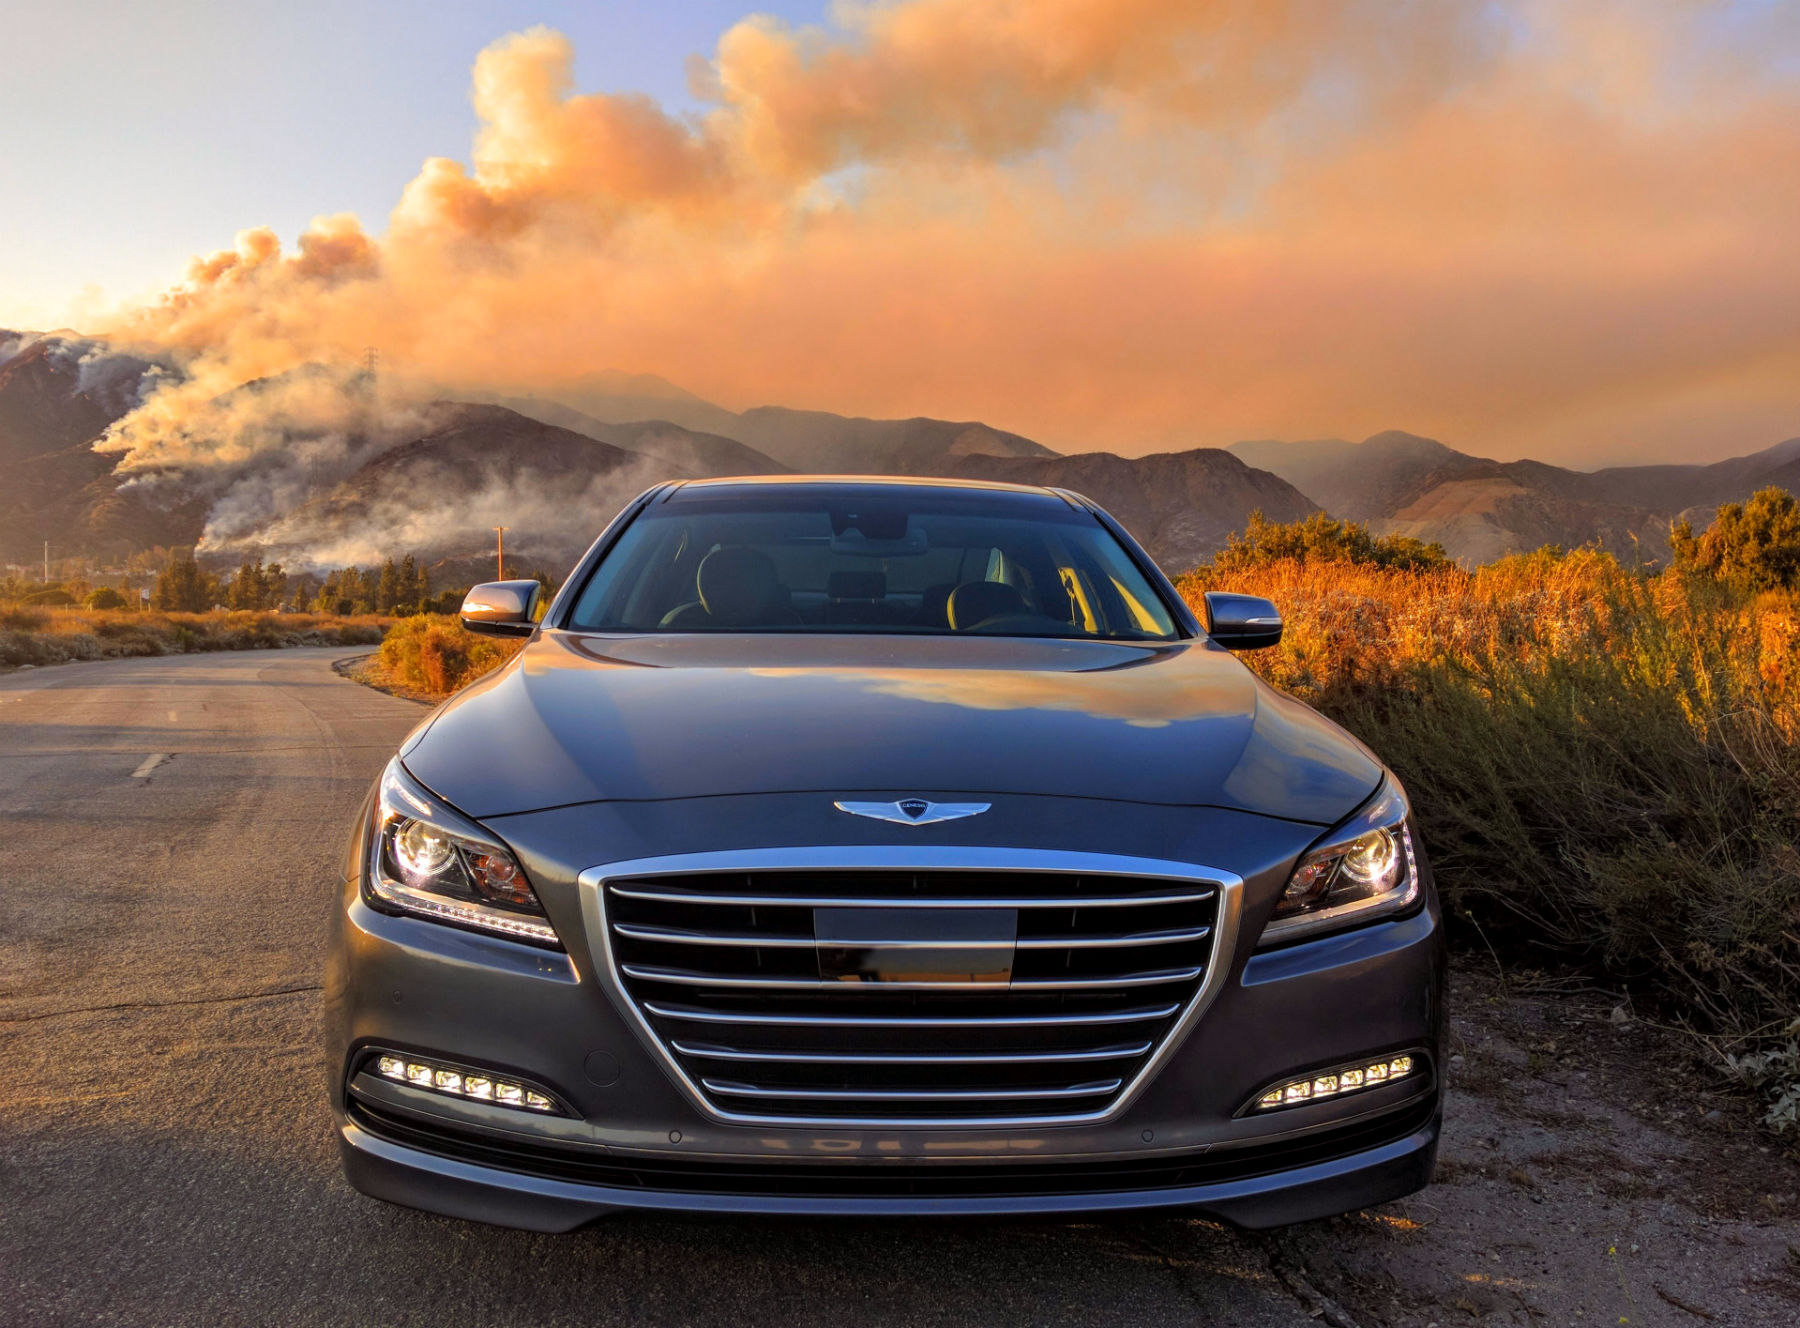 2016 Hyundai Genesis Sedan : California is Burning - The Ignition Blog